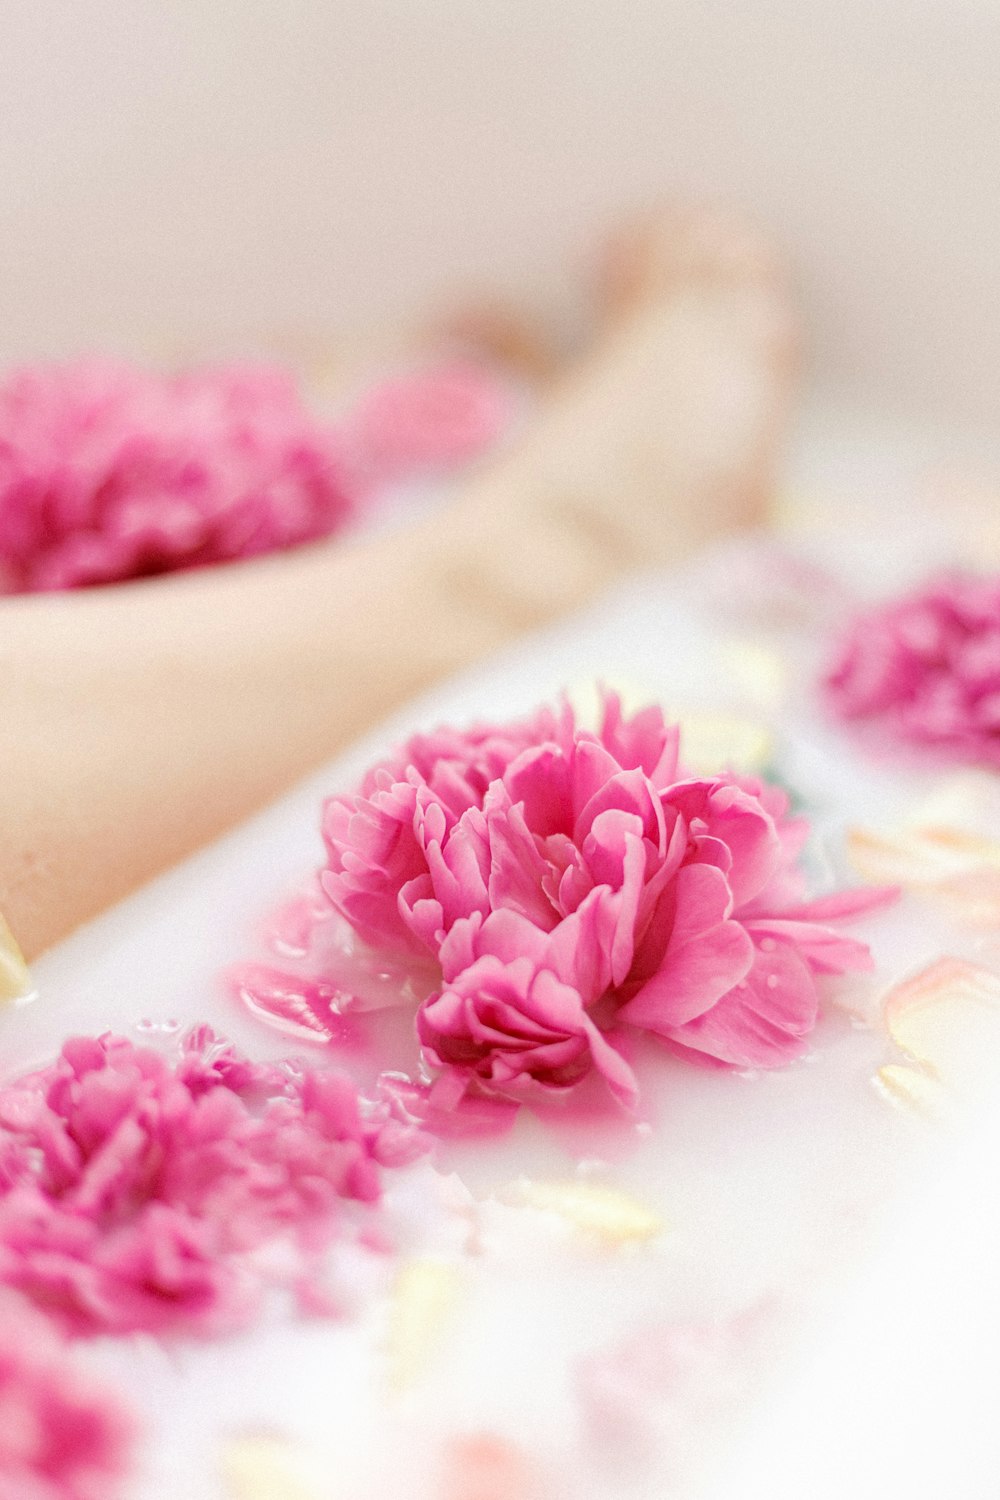 uma pessoa deitada em uma banheira com flores cor-de-rosa